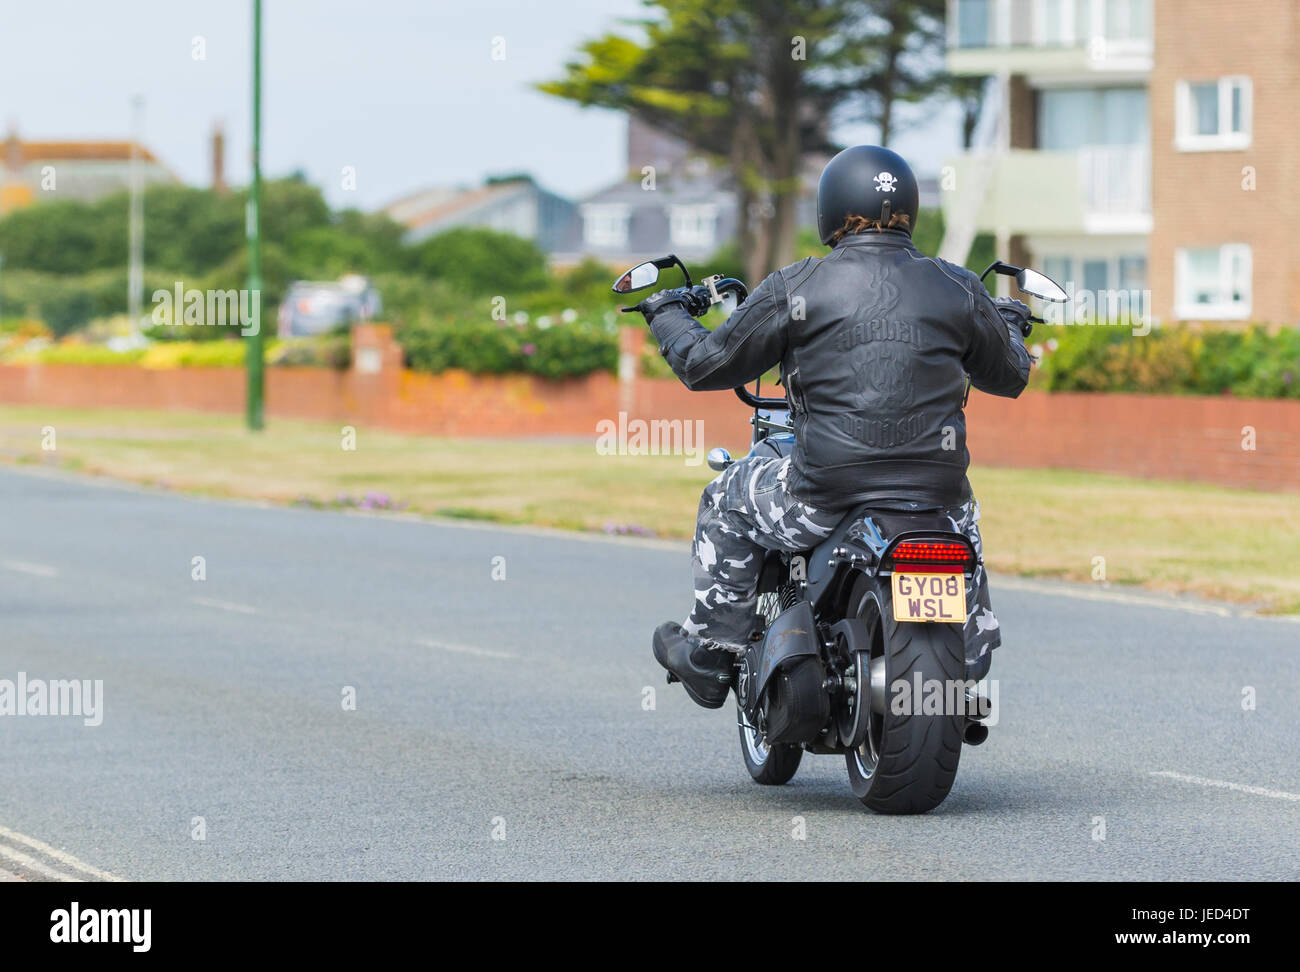 Motorradfahrer tragen eine Harley Davidson Jacke Reiten auf einer Harley Davidson Motorrad. Harley Davidson Fahrrad. Stockfoto